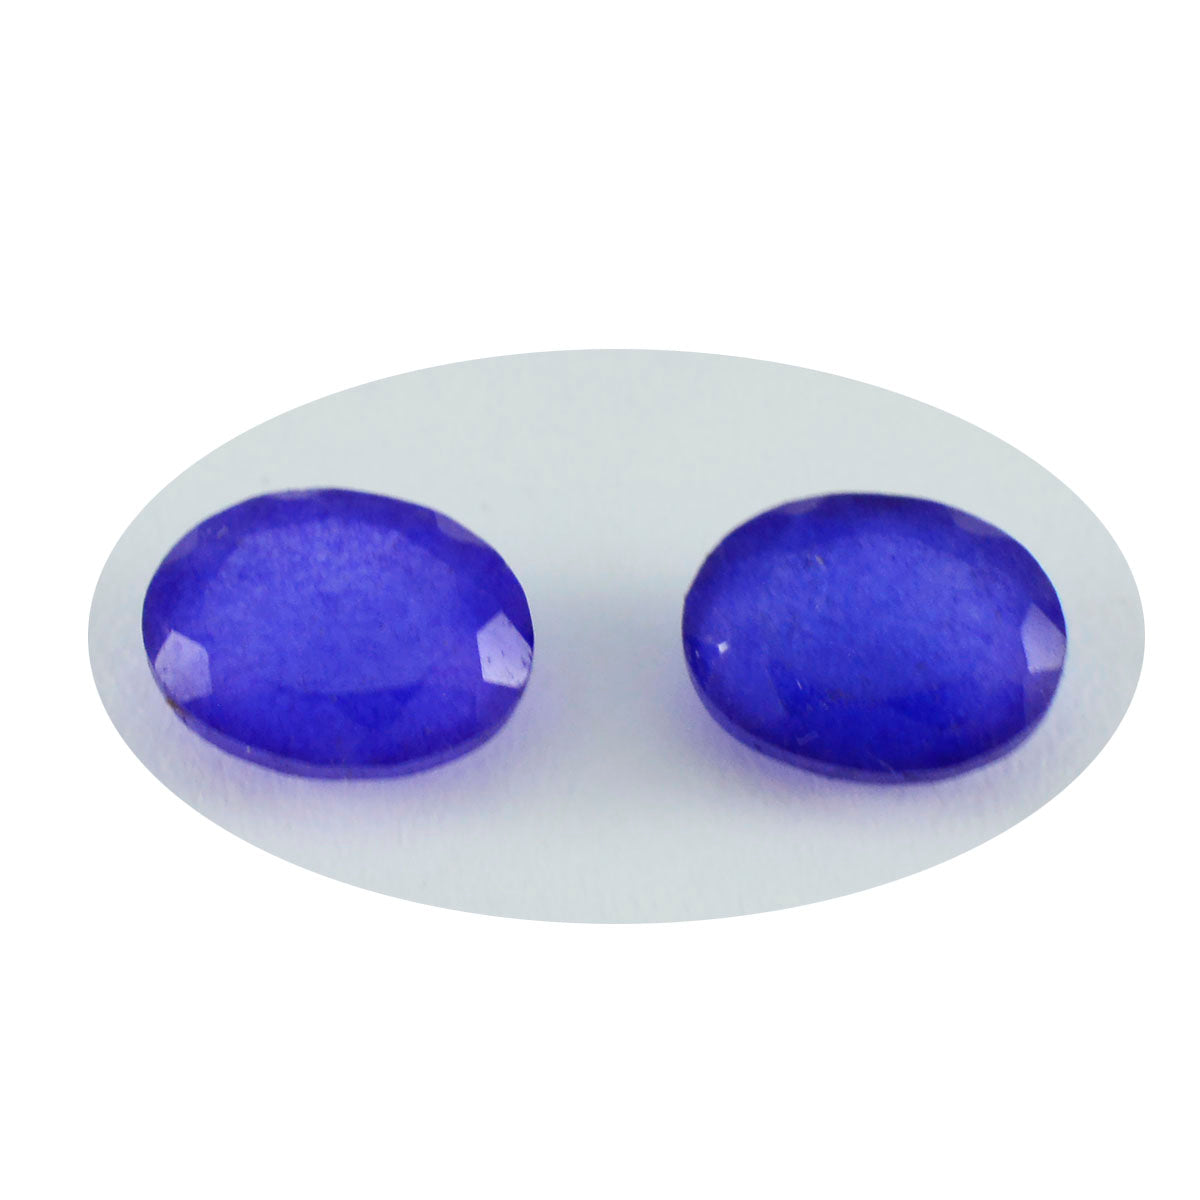 Riyogems 1PC natuurlijke blauwe jaspis gefacetteerd 6x8 mm ovale vorm mooie kwaliteitsedelsteen